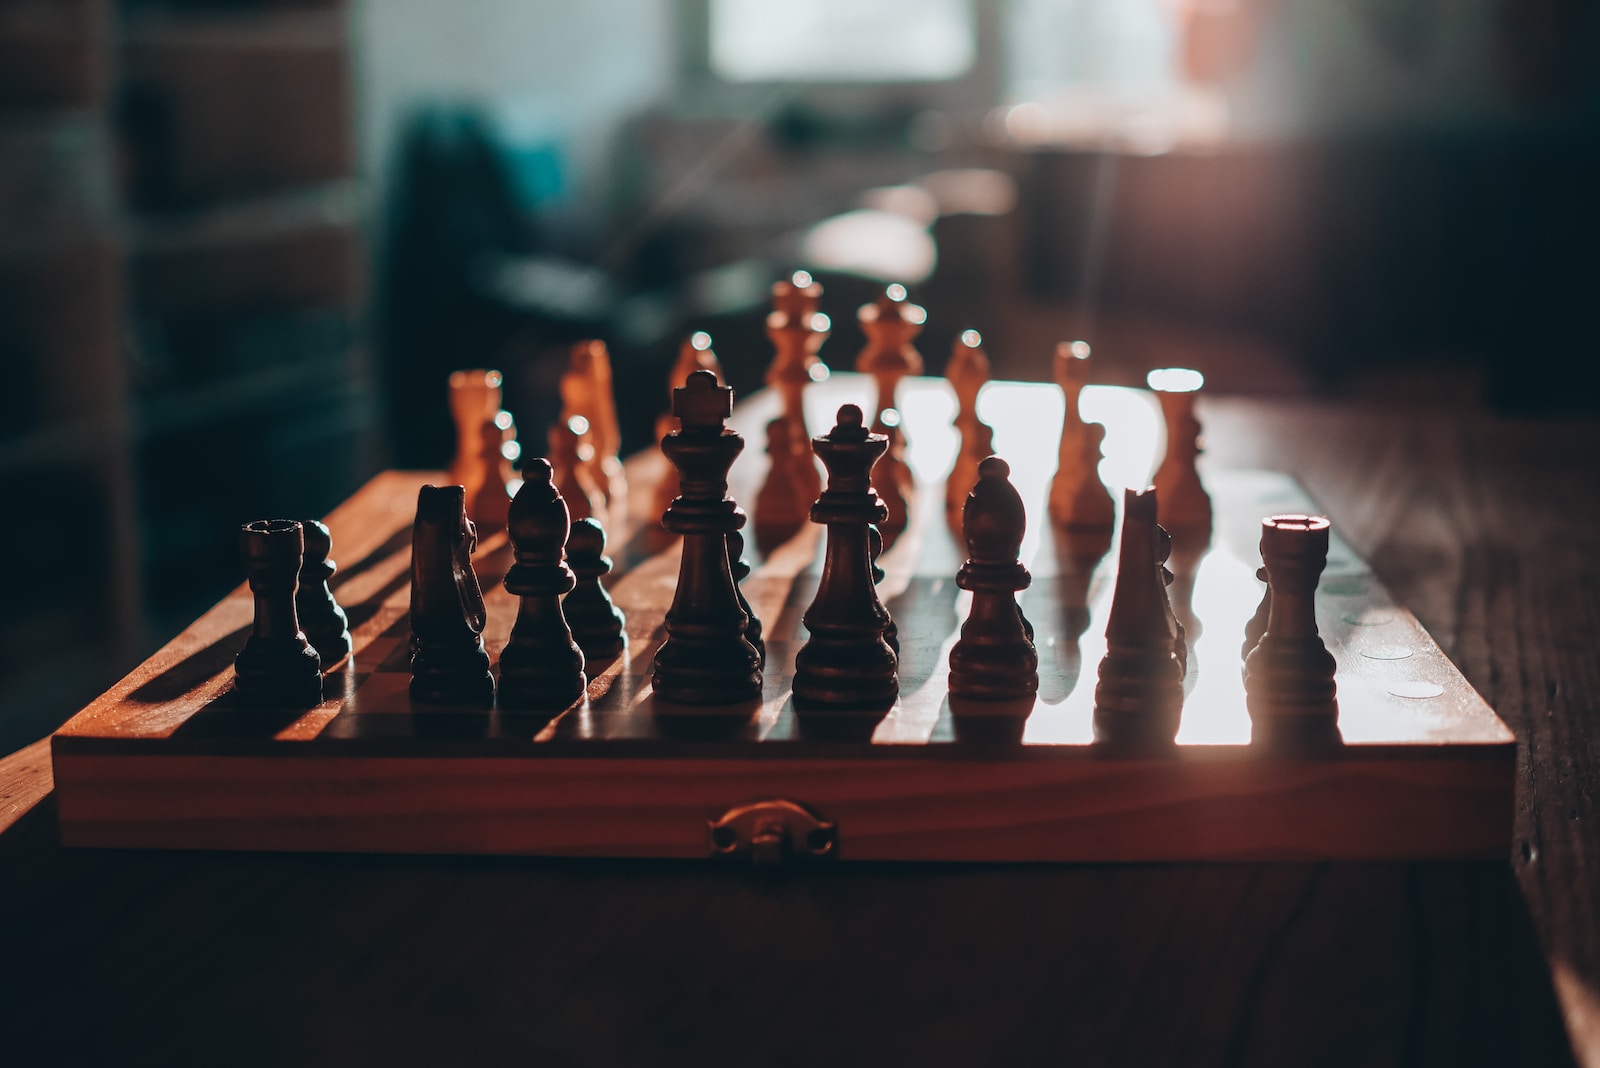 Comment apprendre à jouer aux échecs ? Les règles